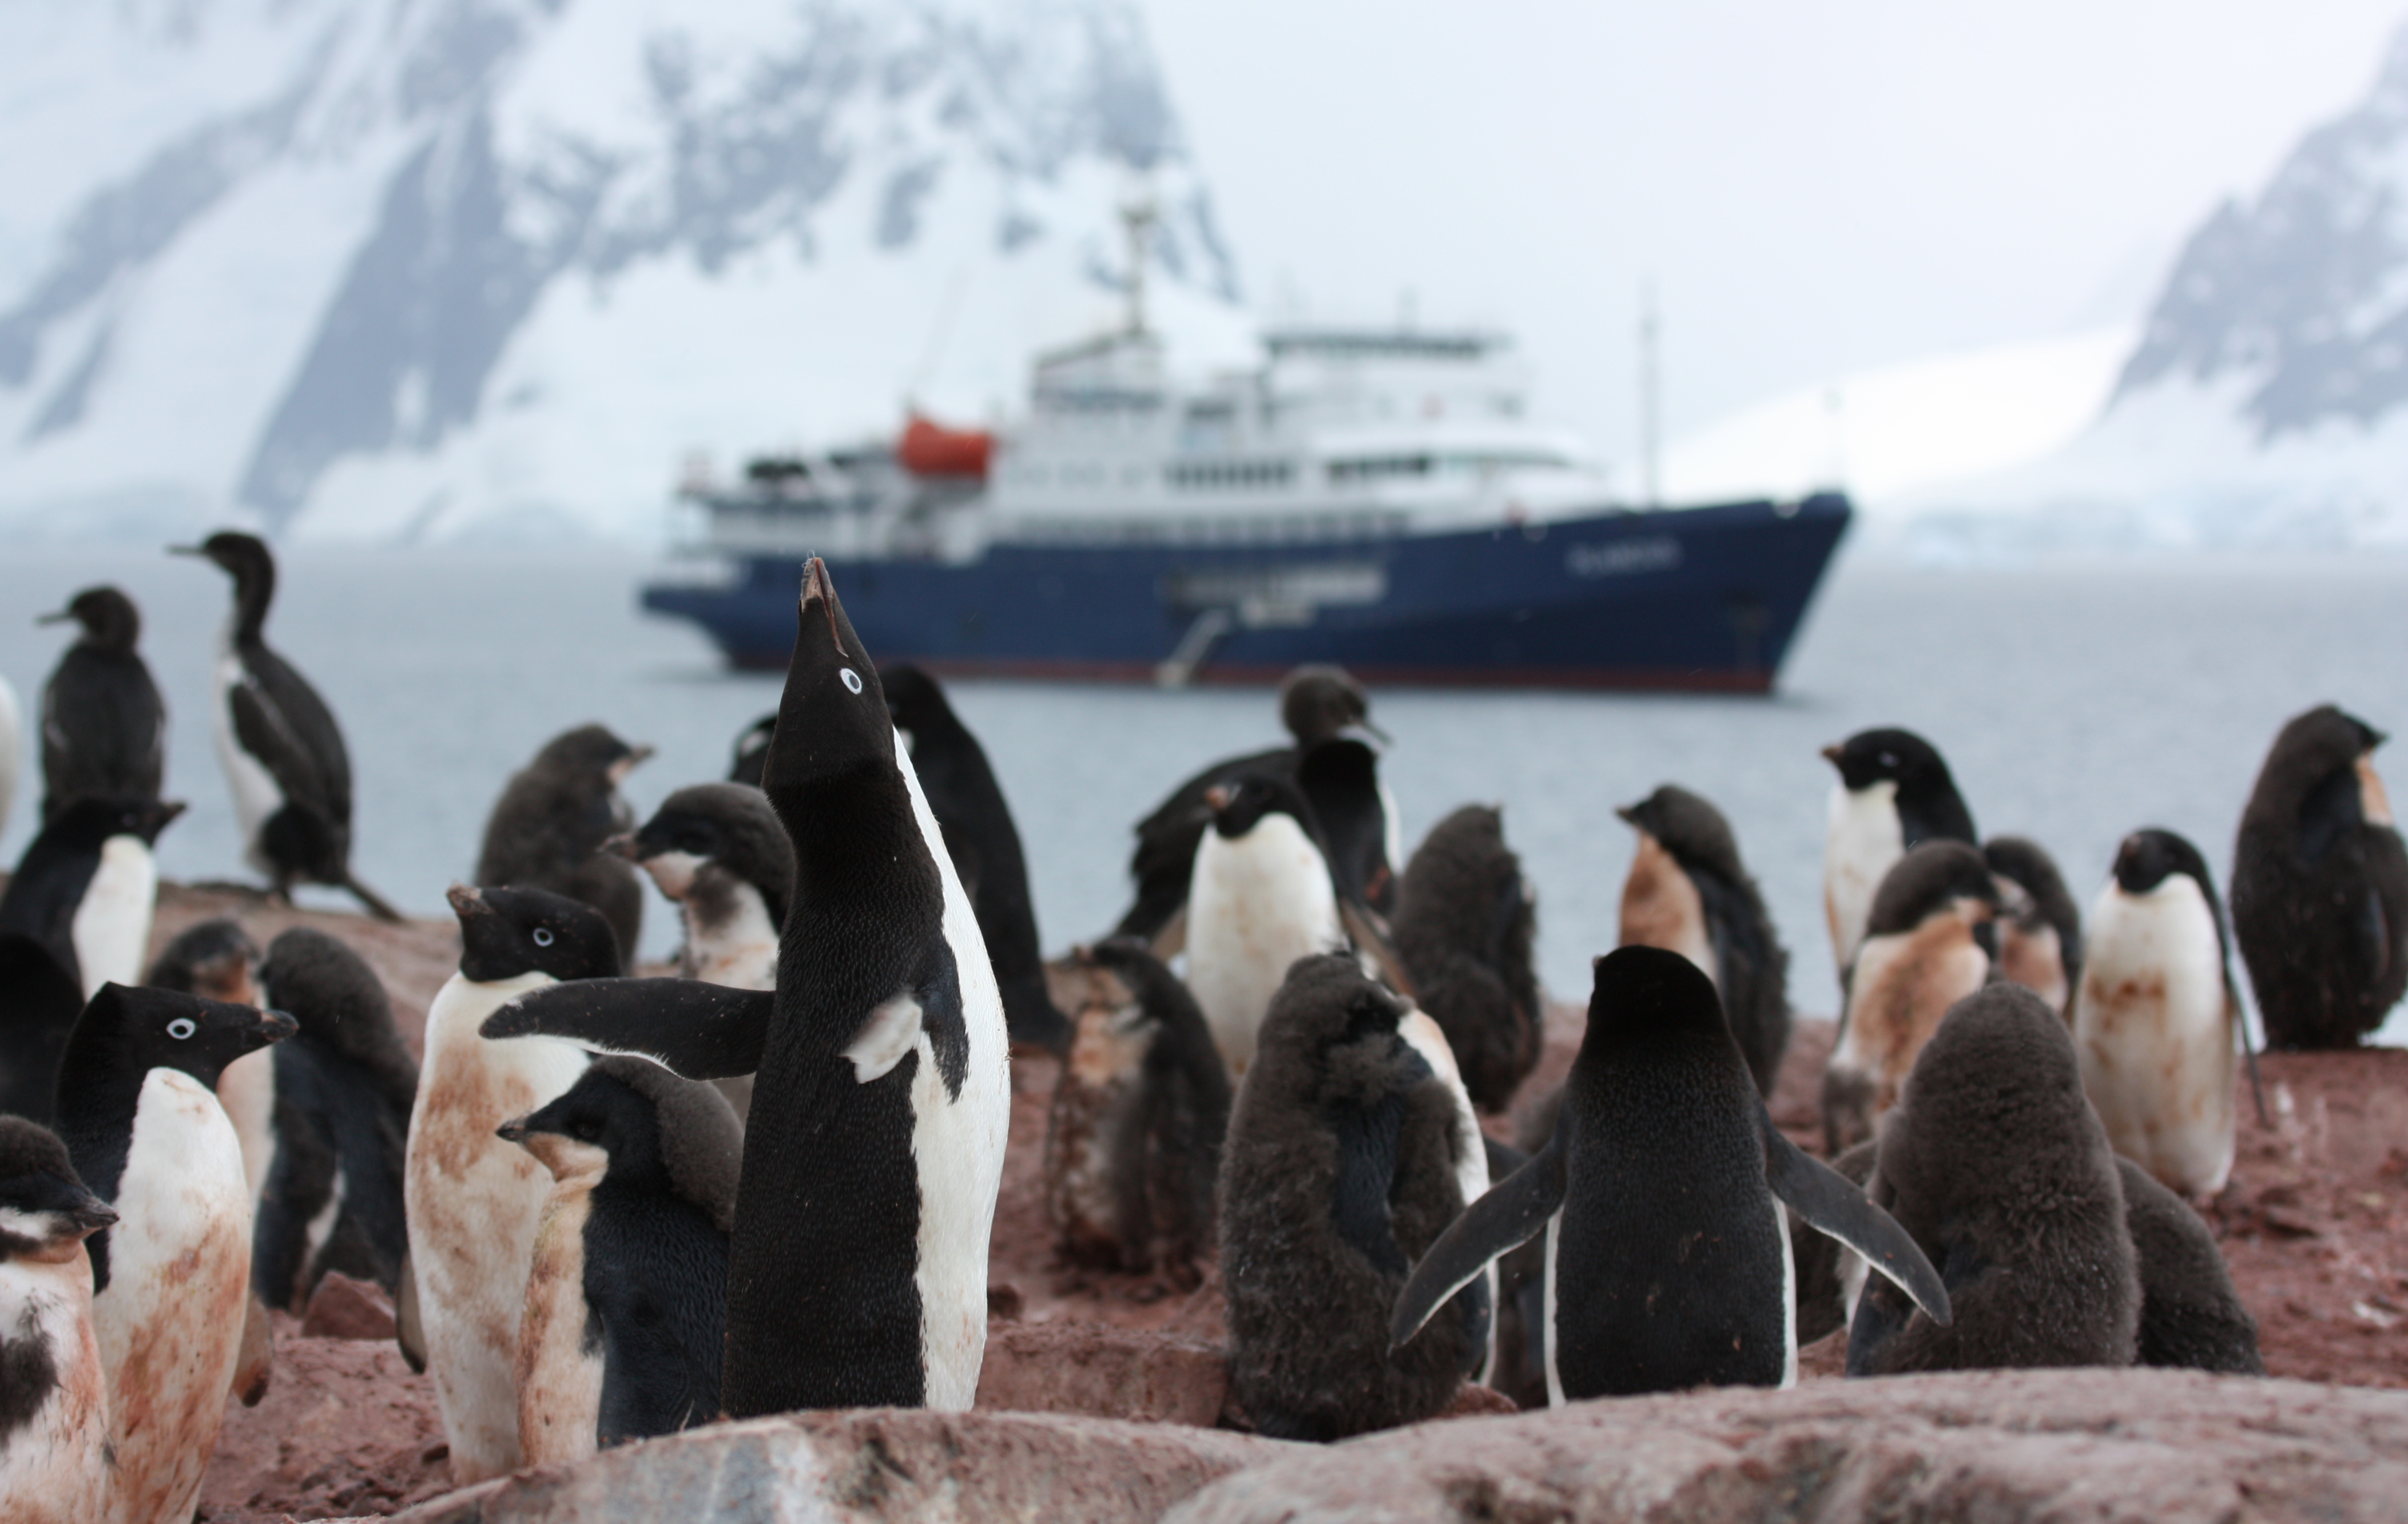 Sehr nah sieht man eine Gruppe von Pinguinen auf einem steinigen Küstenabschnitt stehen. Im Hintergrund fährt ein Schiff vorbei.